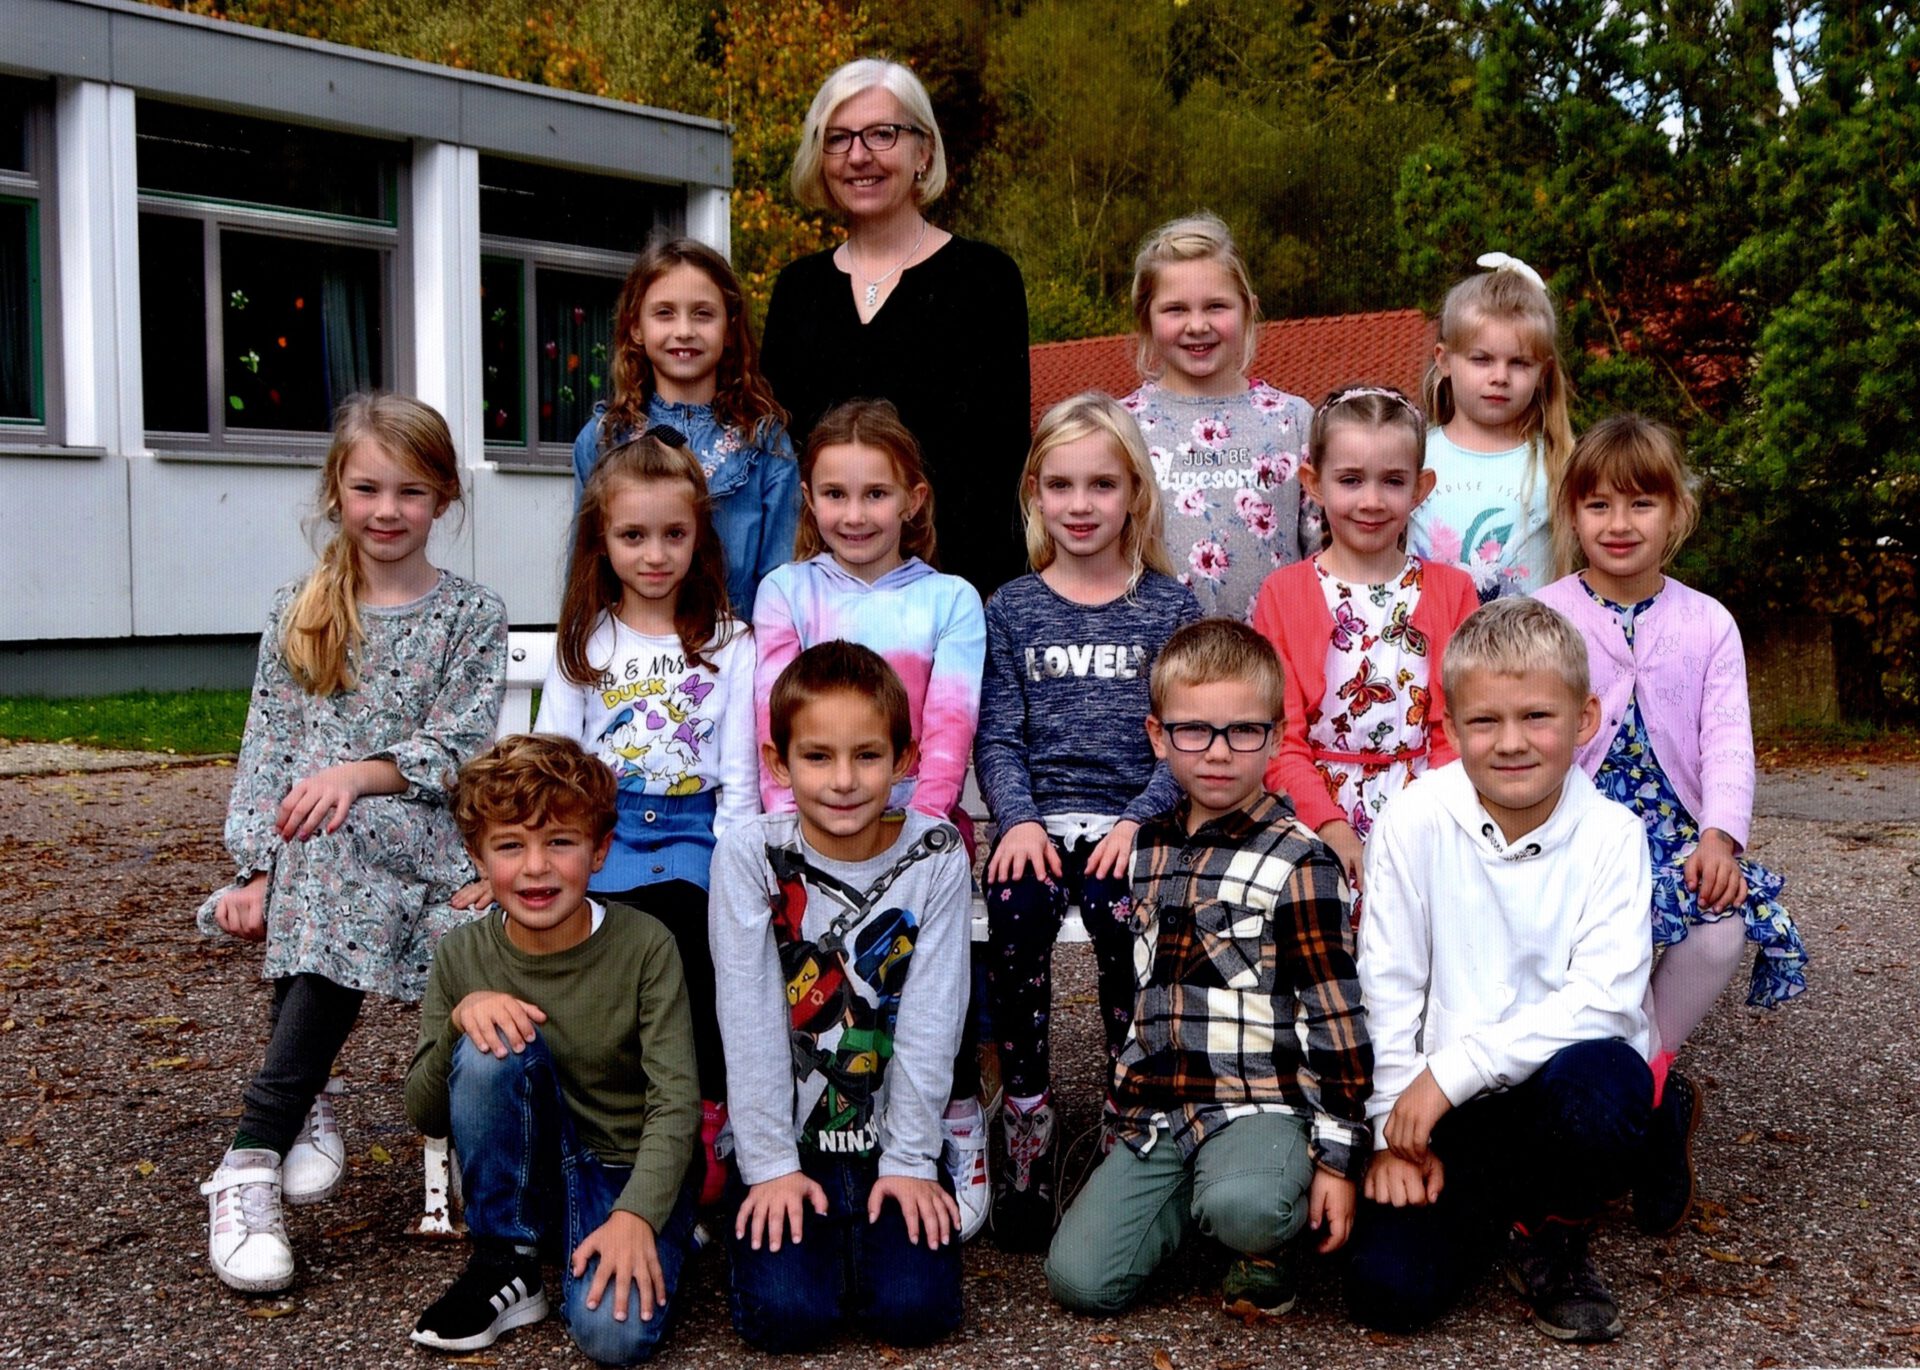 Grundschule Schönmünzach